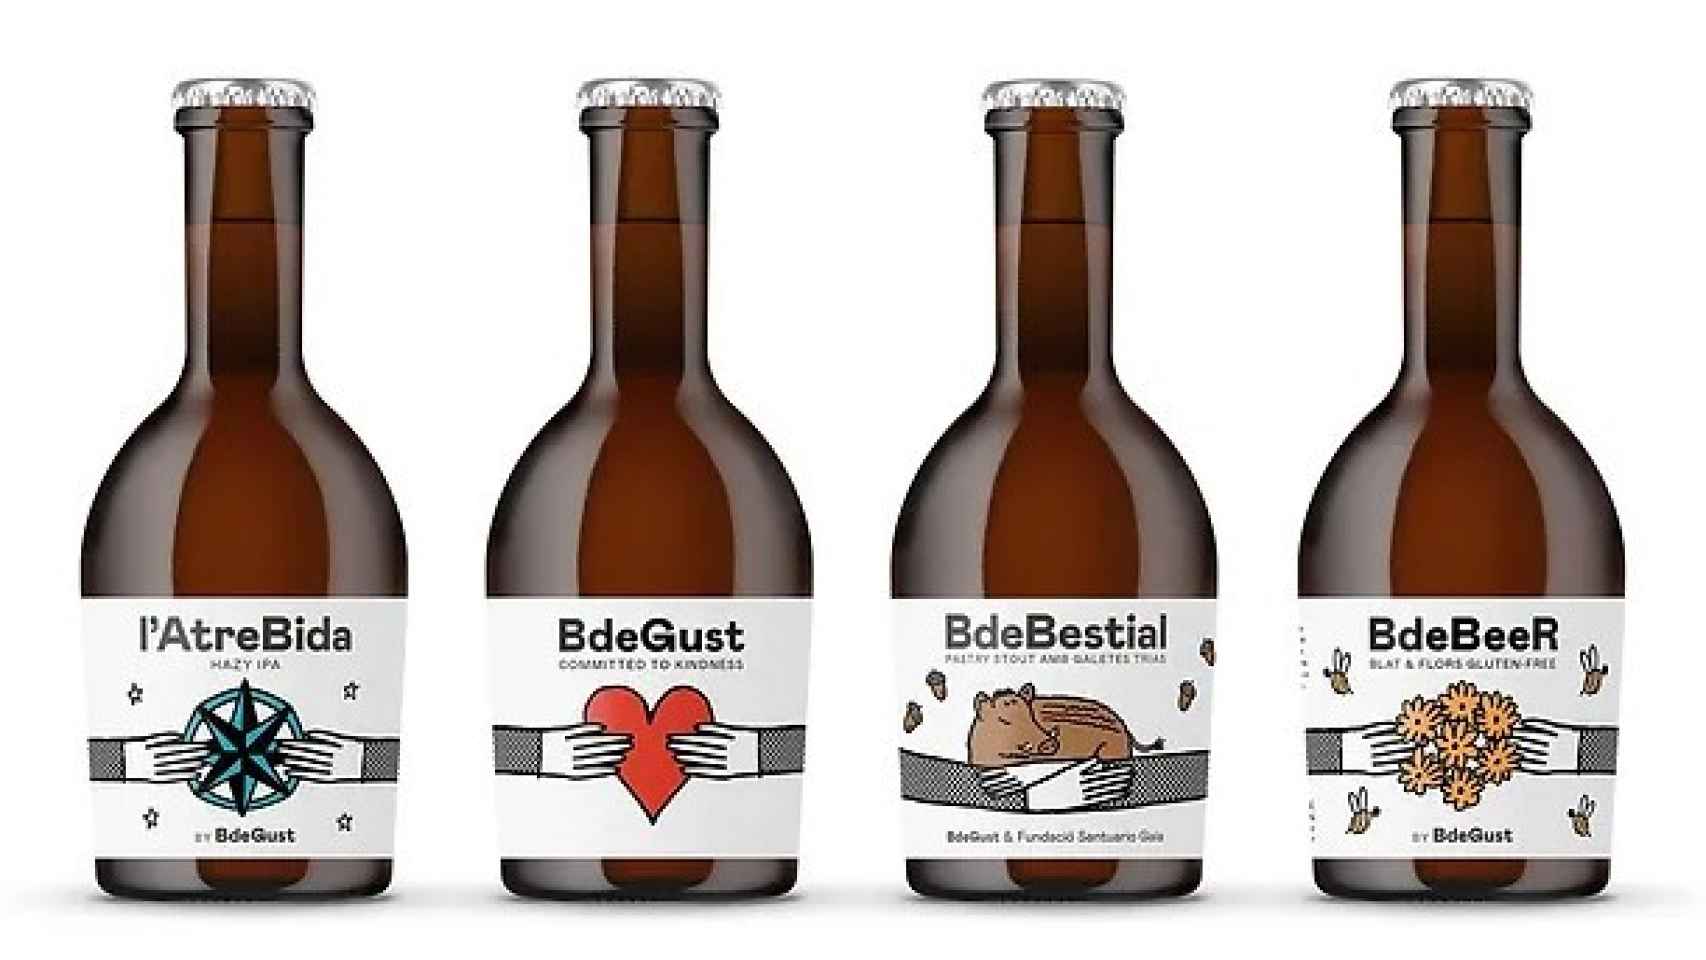 Otros tipos de cerveza BdeGust